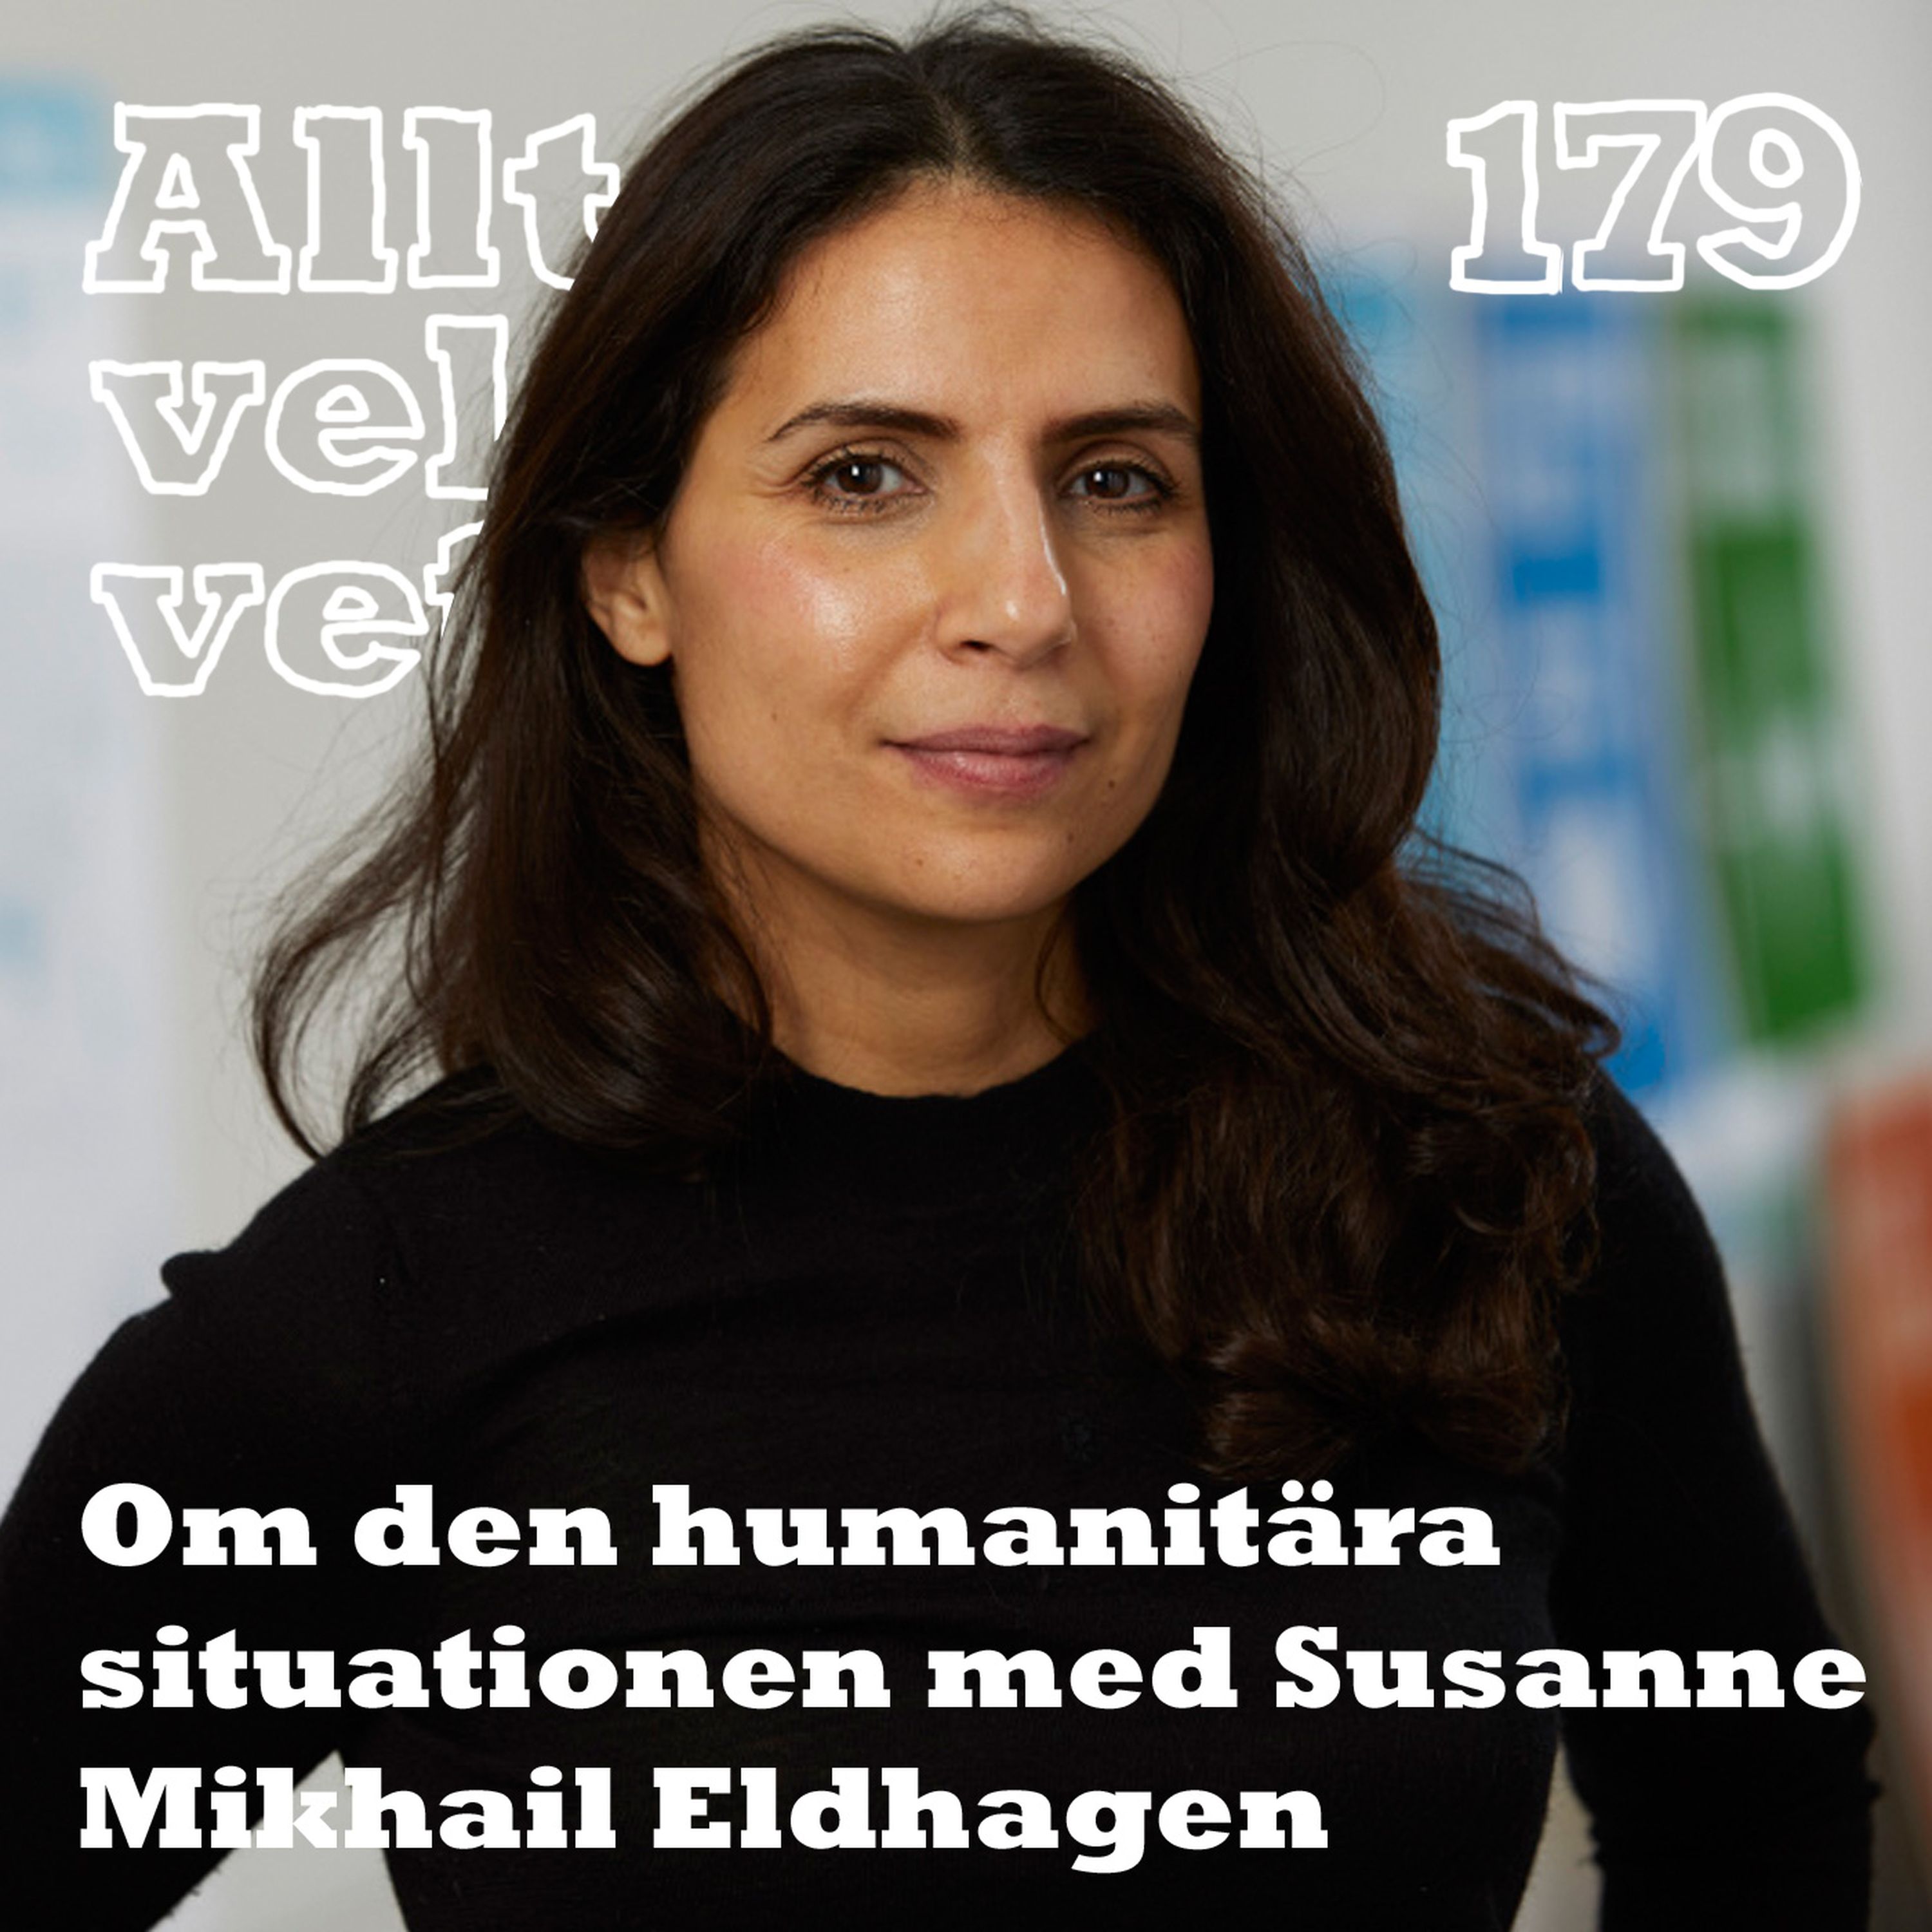 179 Om den humanitära situationen i världen med Susanne Mikhail Eldhagen